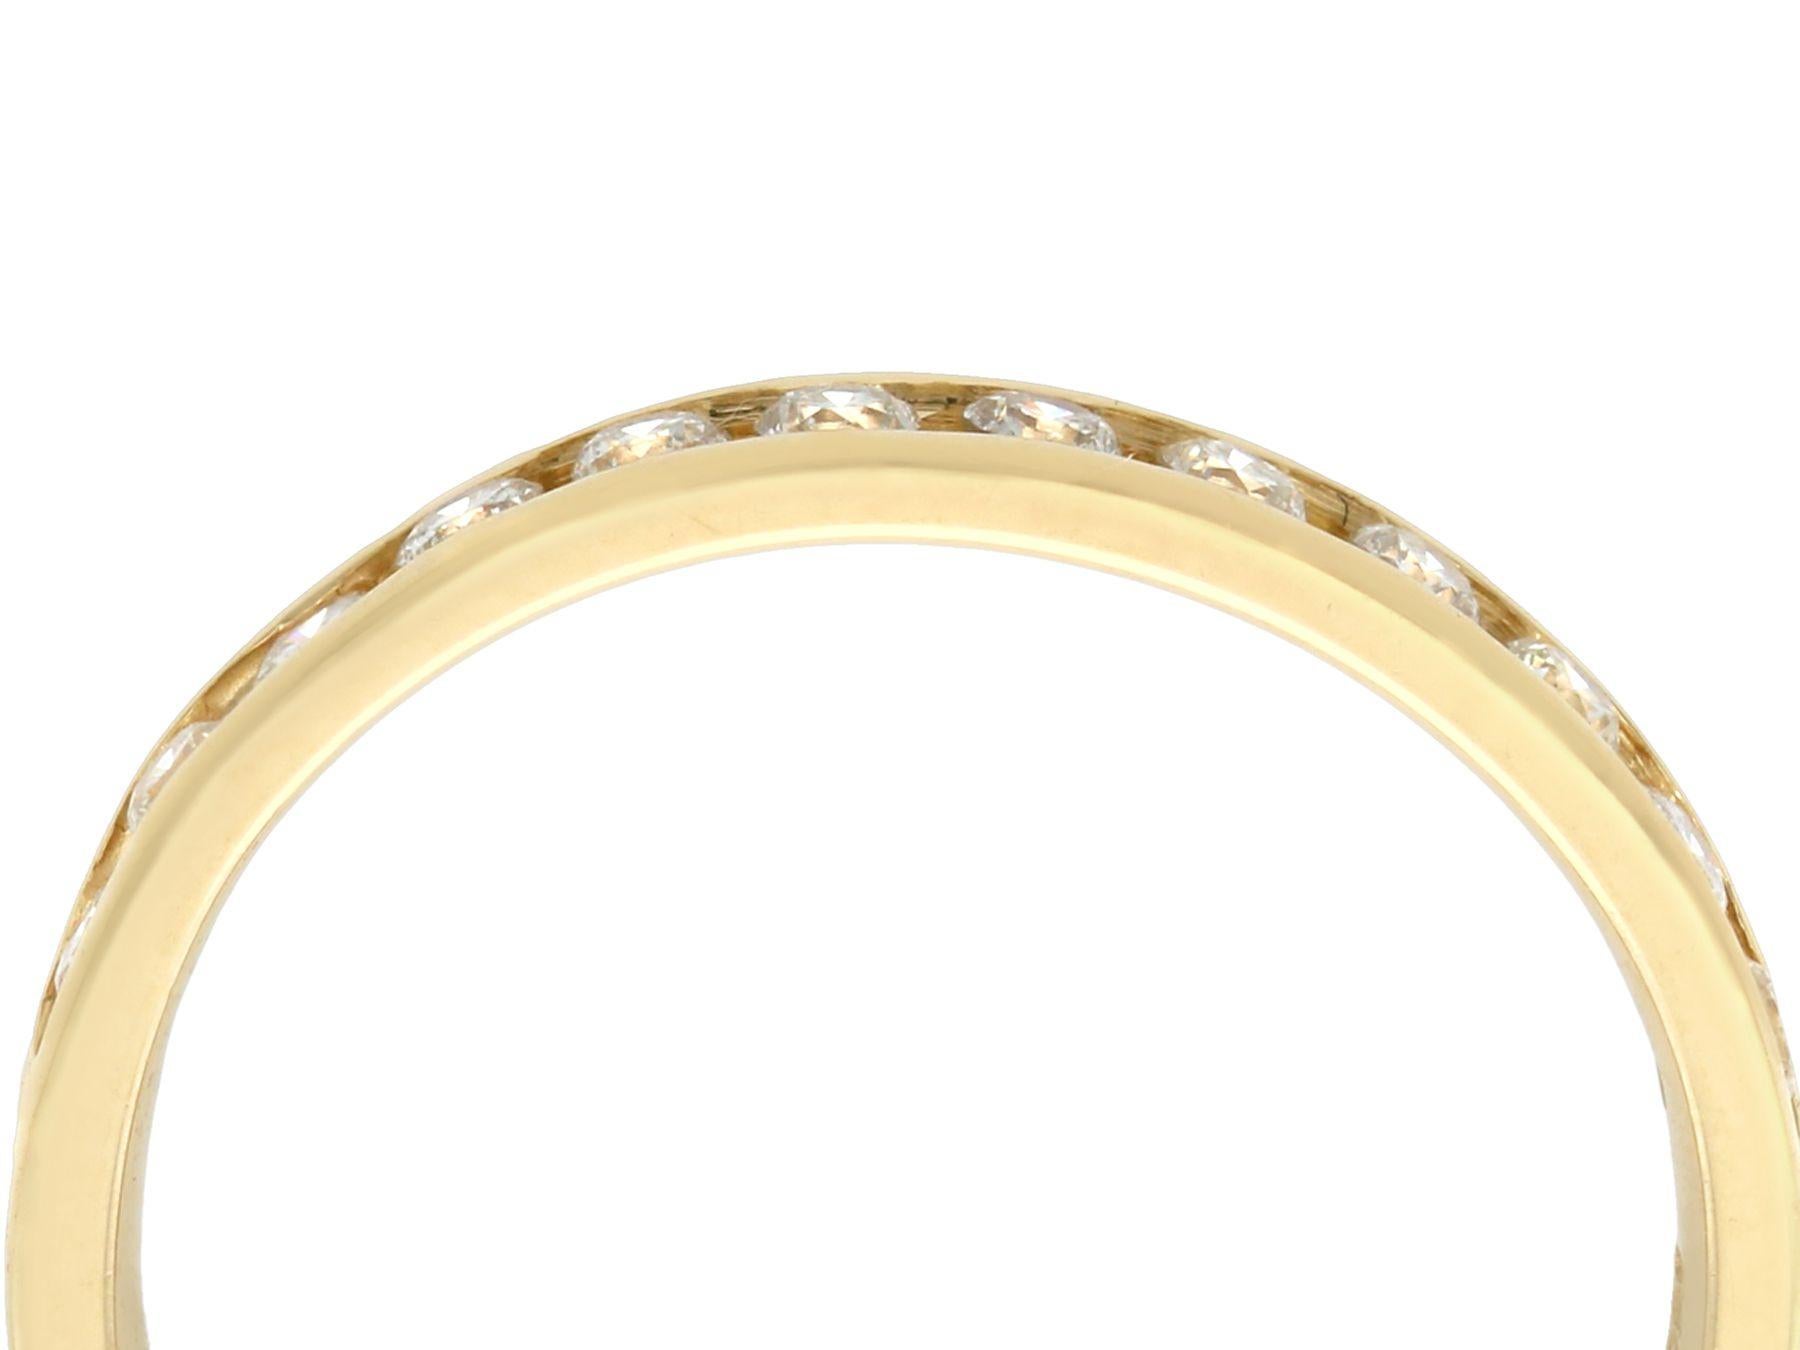 Ein beeindruckender Vintage-Ring aus den 1990er Jahren mit 0,39 Karat Diamant und 14 Karat Gelbgold für die halbe Ewigkeit; Teil unserer vielfältigen Diamantschmuck- und Nachlass-Schmuckkollektionen

Dieser schöne und beeindruckende